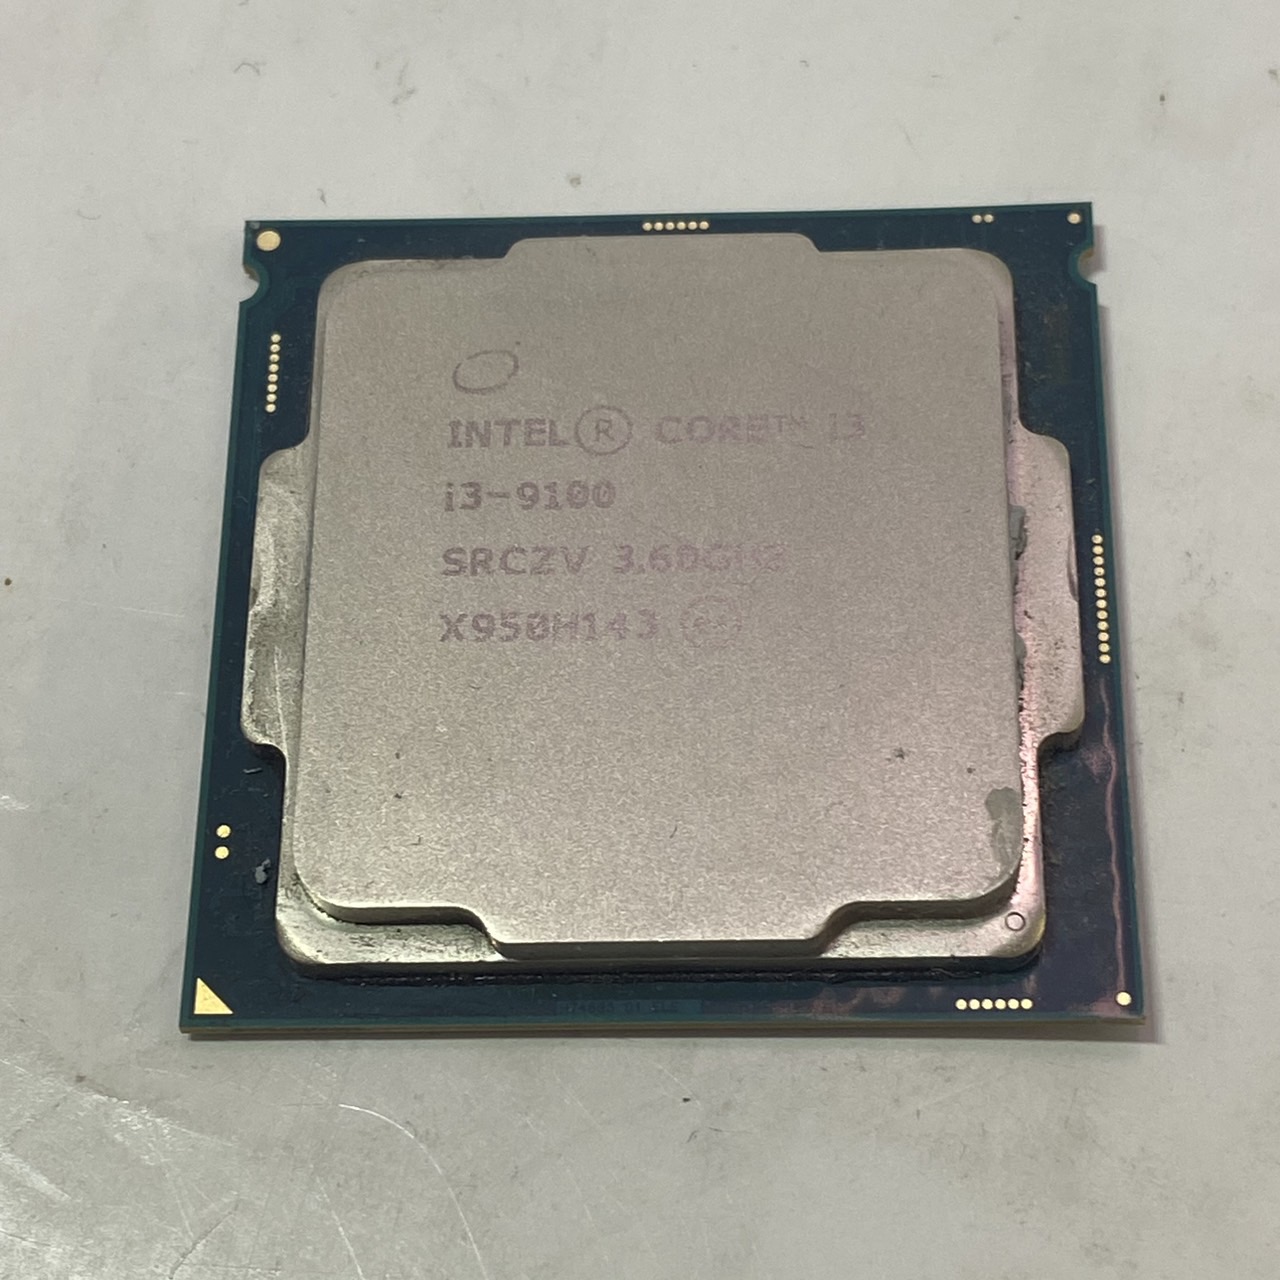 Intel(インテル) Core i3-9100 3.60GHzの激安通販(詳細情報) - パソコンショップパウ